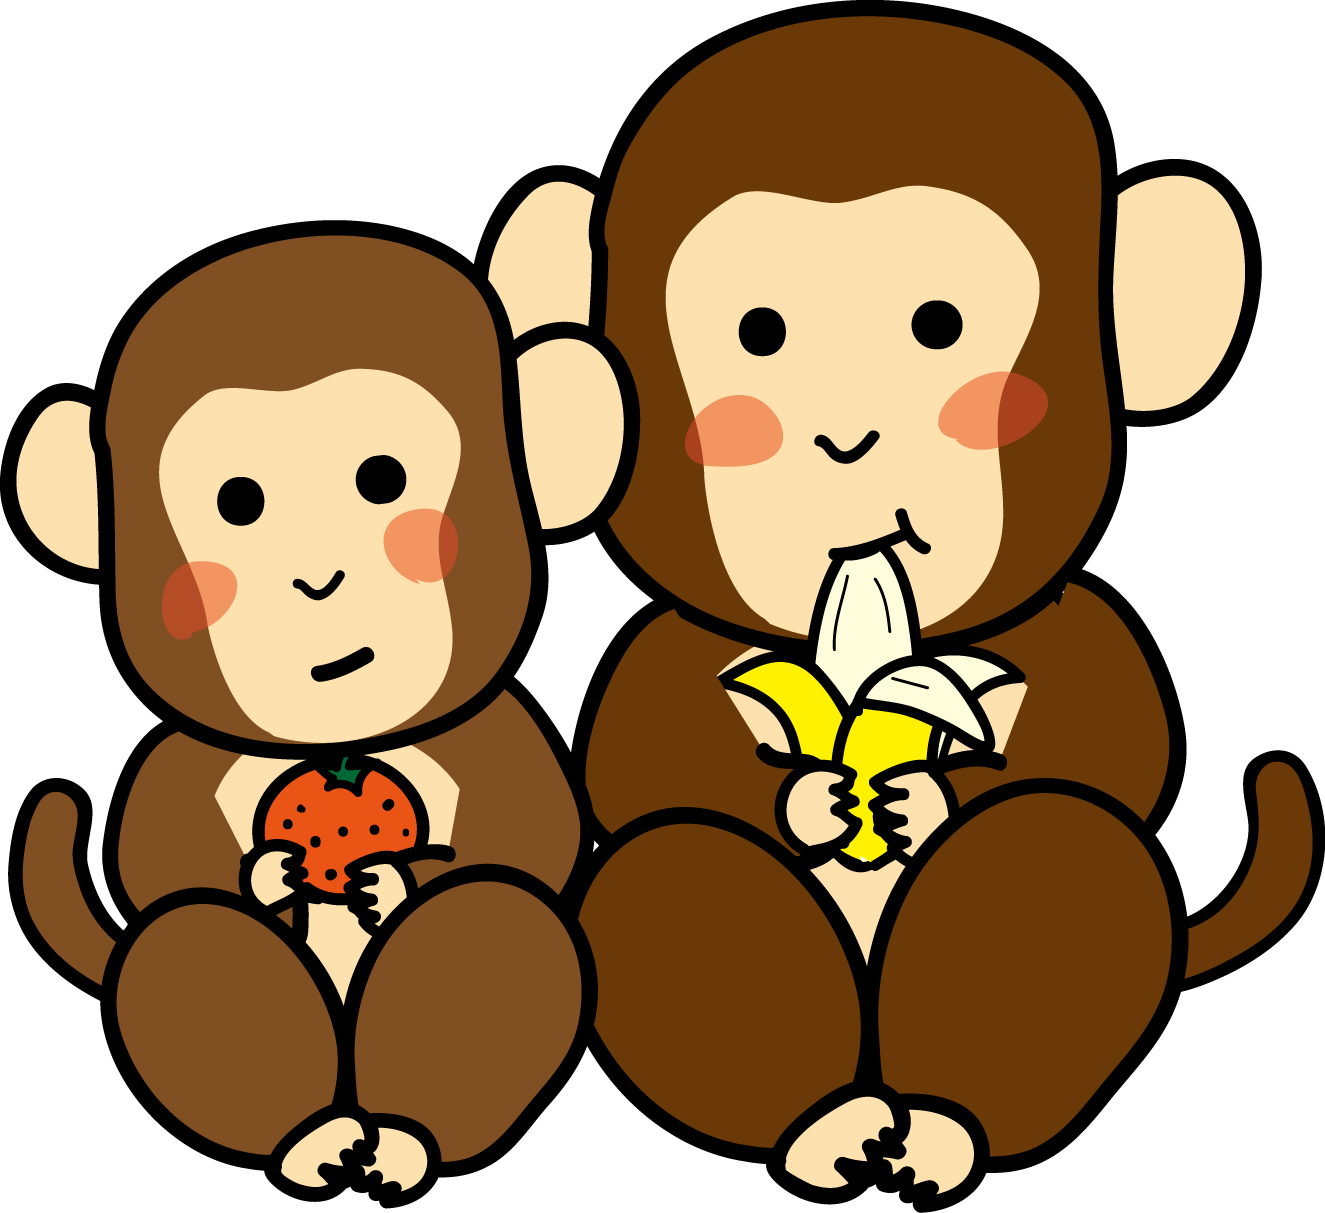 猿のイラスト(2016年_申年 年賀状用) : 【2016年・申年】 猿（サル）のイラスト素材（さる,デザイン,ロゴ,パーツ,無料,フリー